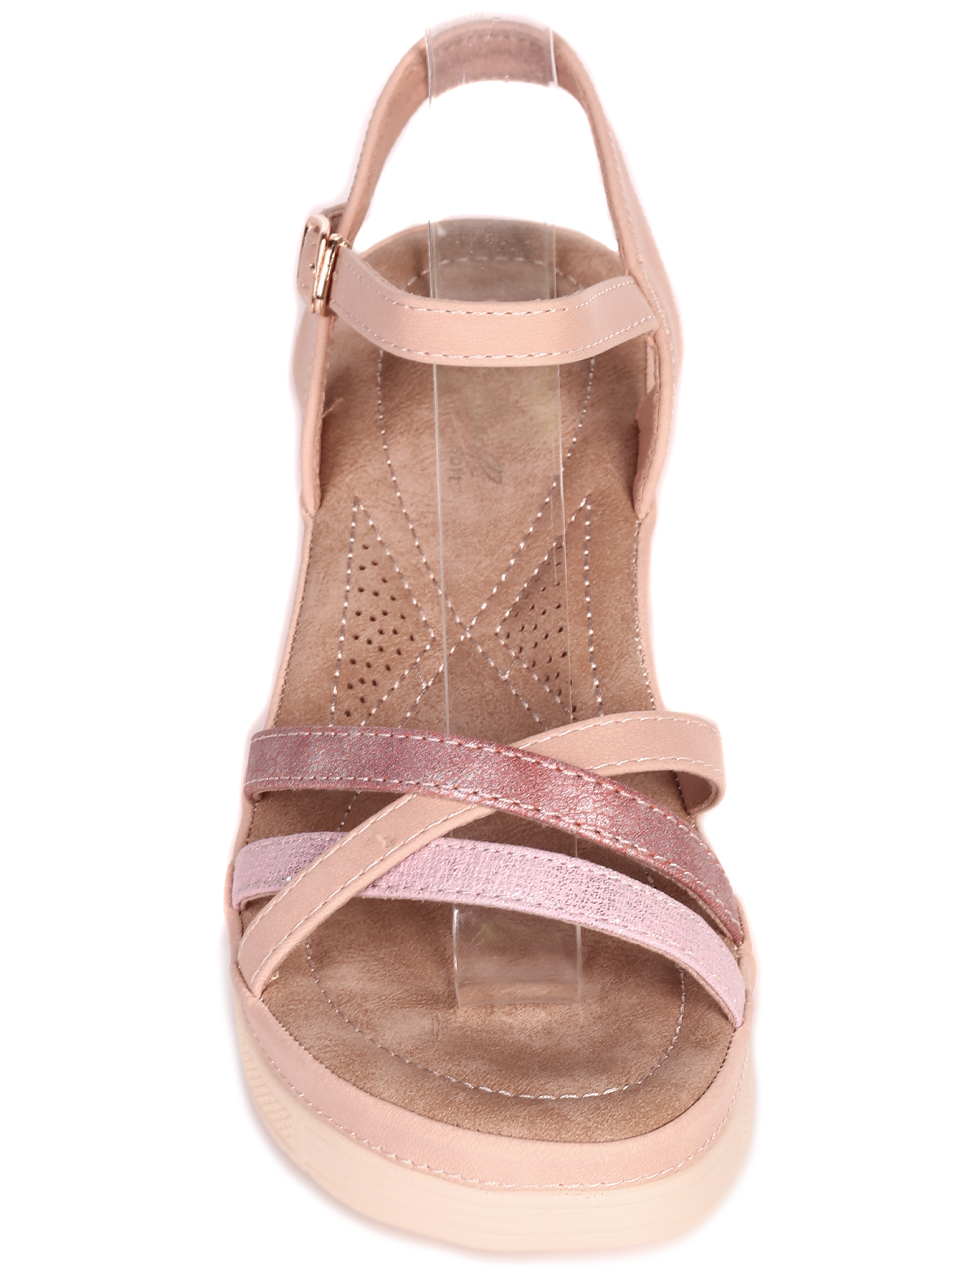 Ежедневни дамски сандали на платформа 4H-23114 pink (22237)